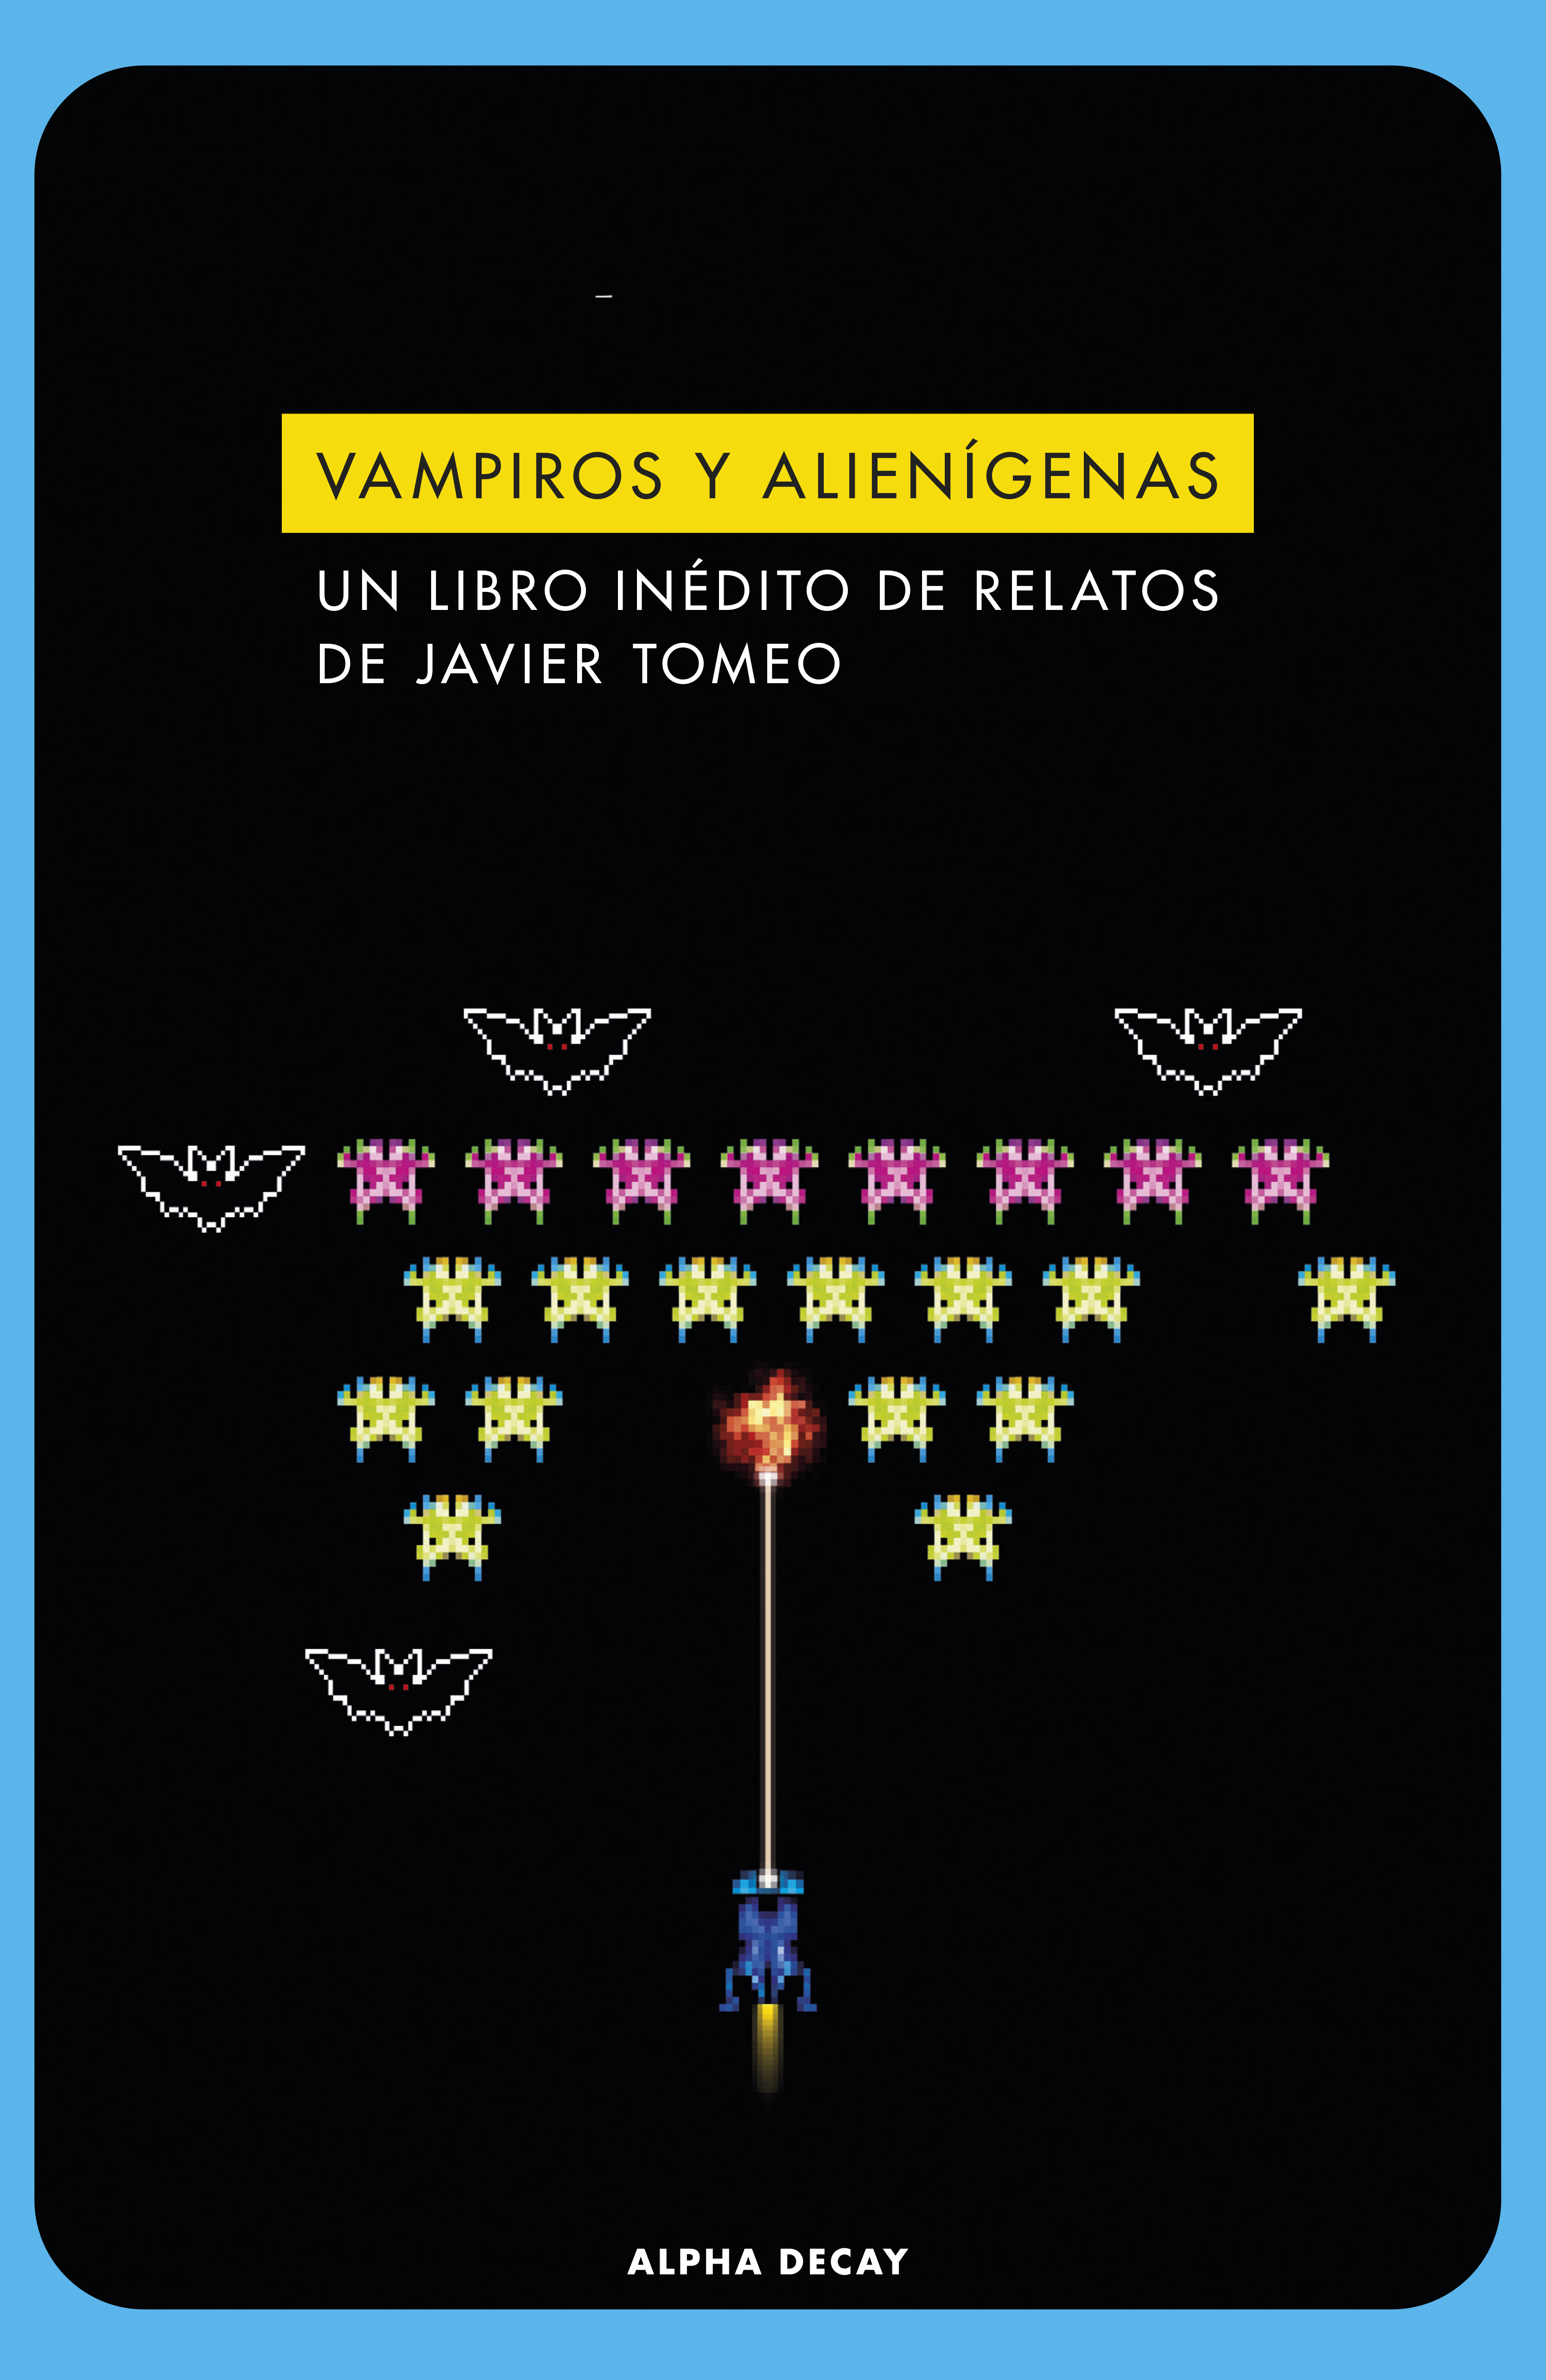 Vampiros y alienígenas «Un libro inédito de relatos de Javier Tomeo»